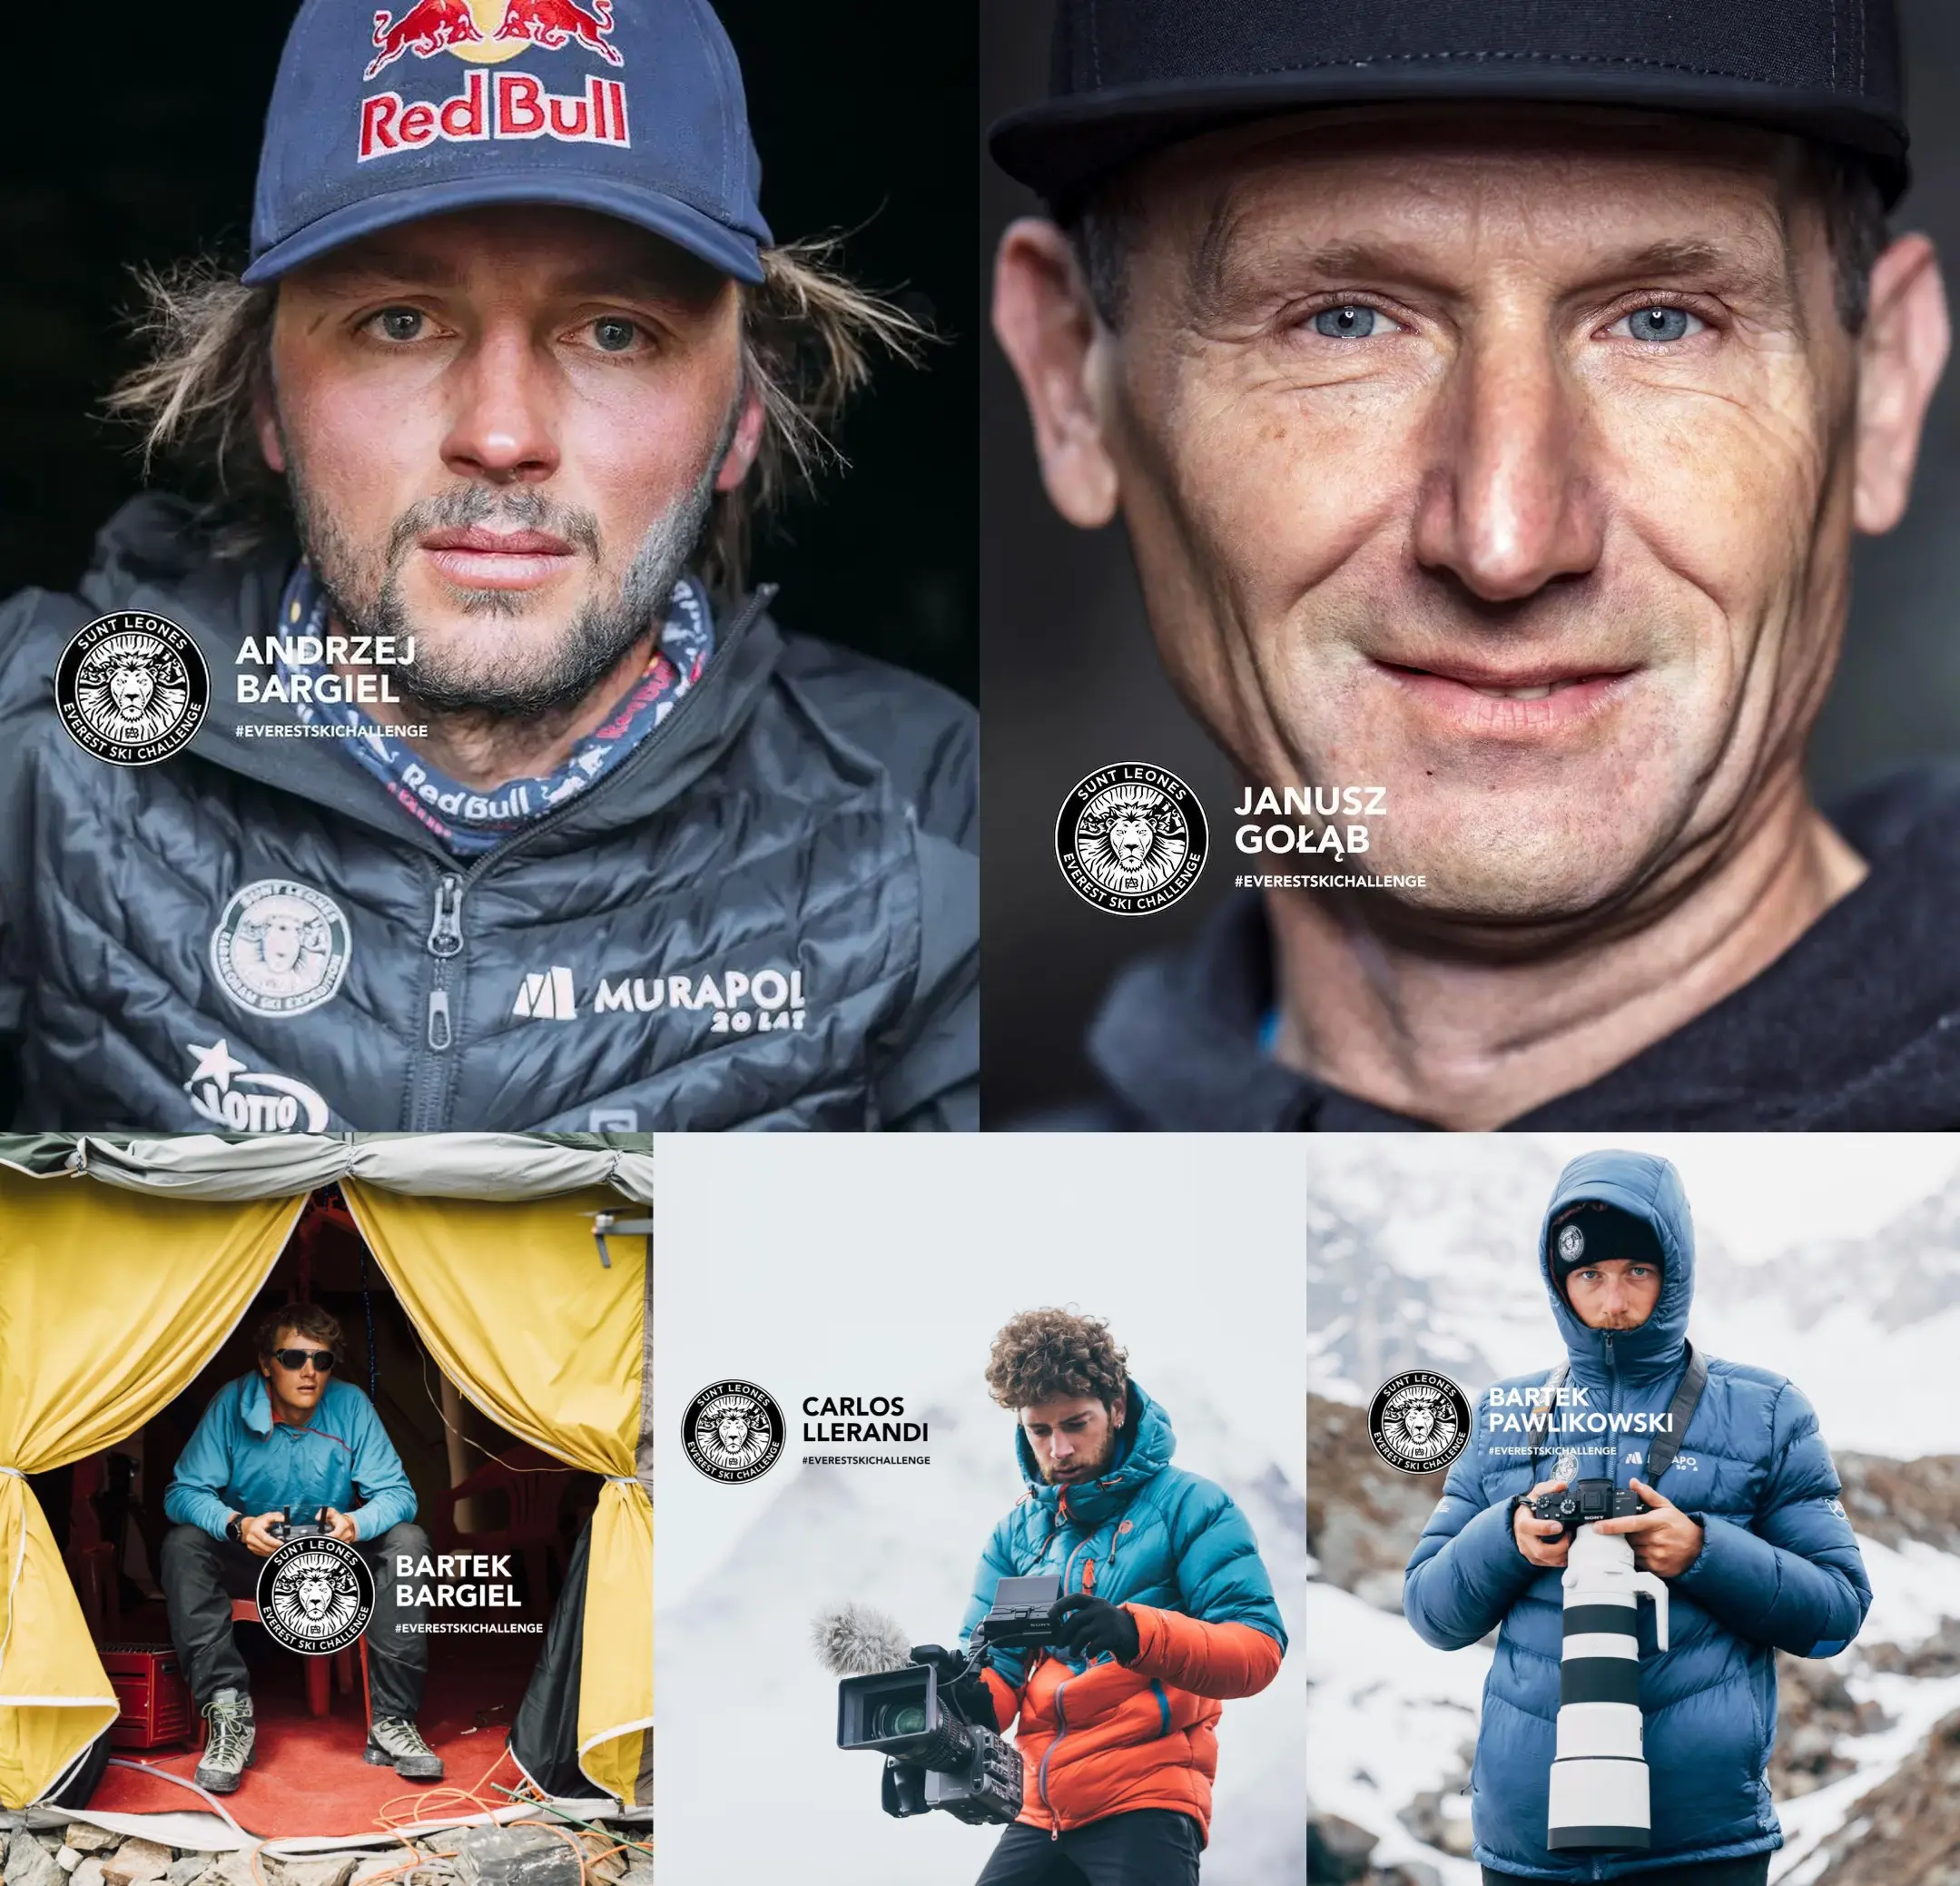 До команди "Everest Ski Challenge" у цьому проекті входять: Анджей Баргель (Andrzej Bargiel), Януш Голомб (Janusz Gołąb), Бартек Баргіель (Bartek Bargiel), Карлос Ллеранді (Carlos Llerandi), Бартек Павліковський (Bartek Pawlikowski)